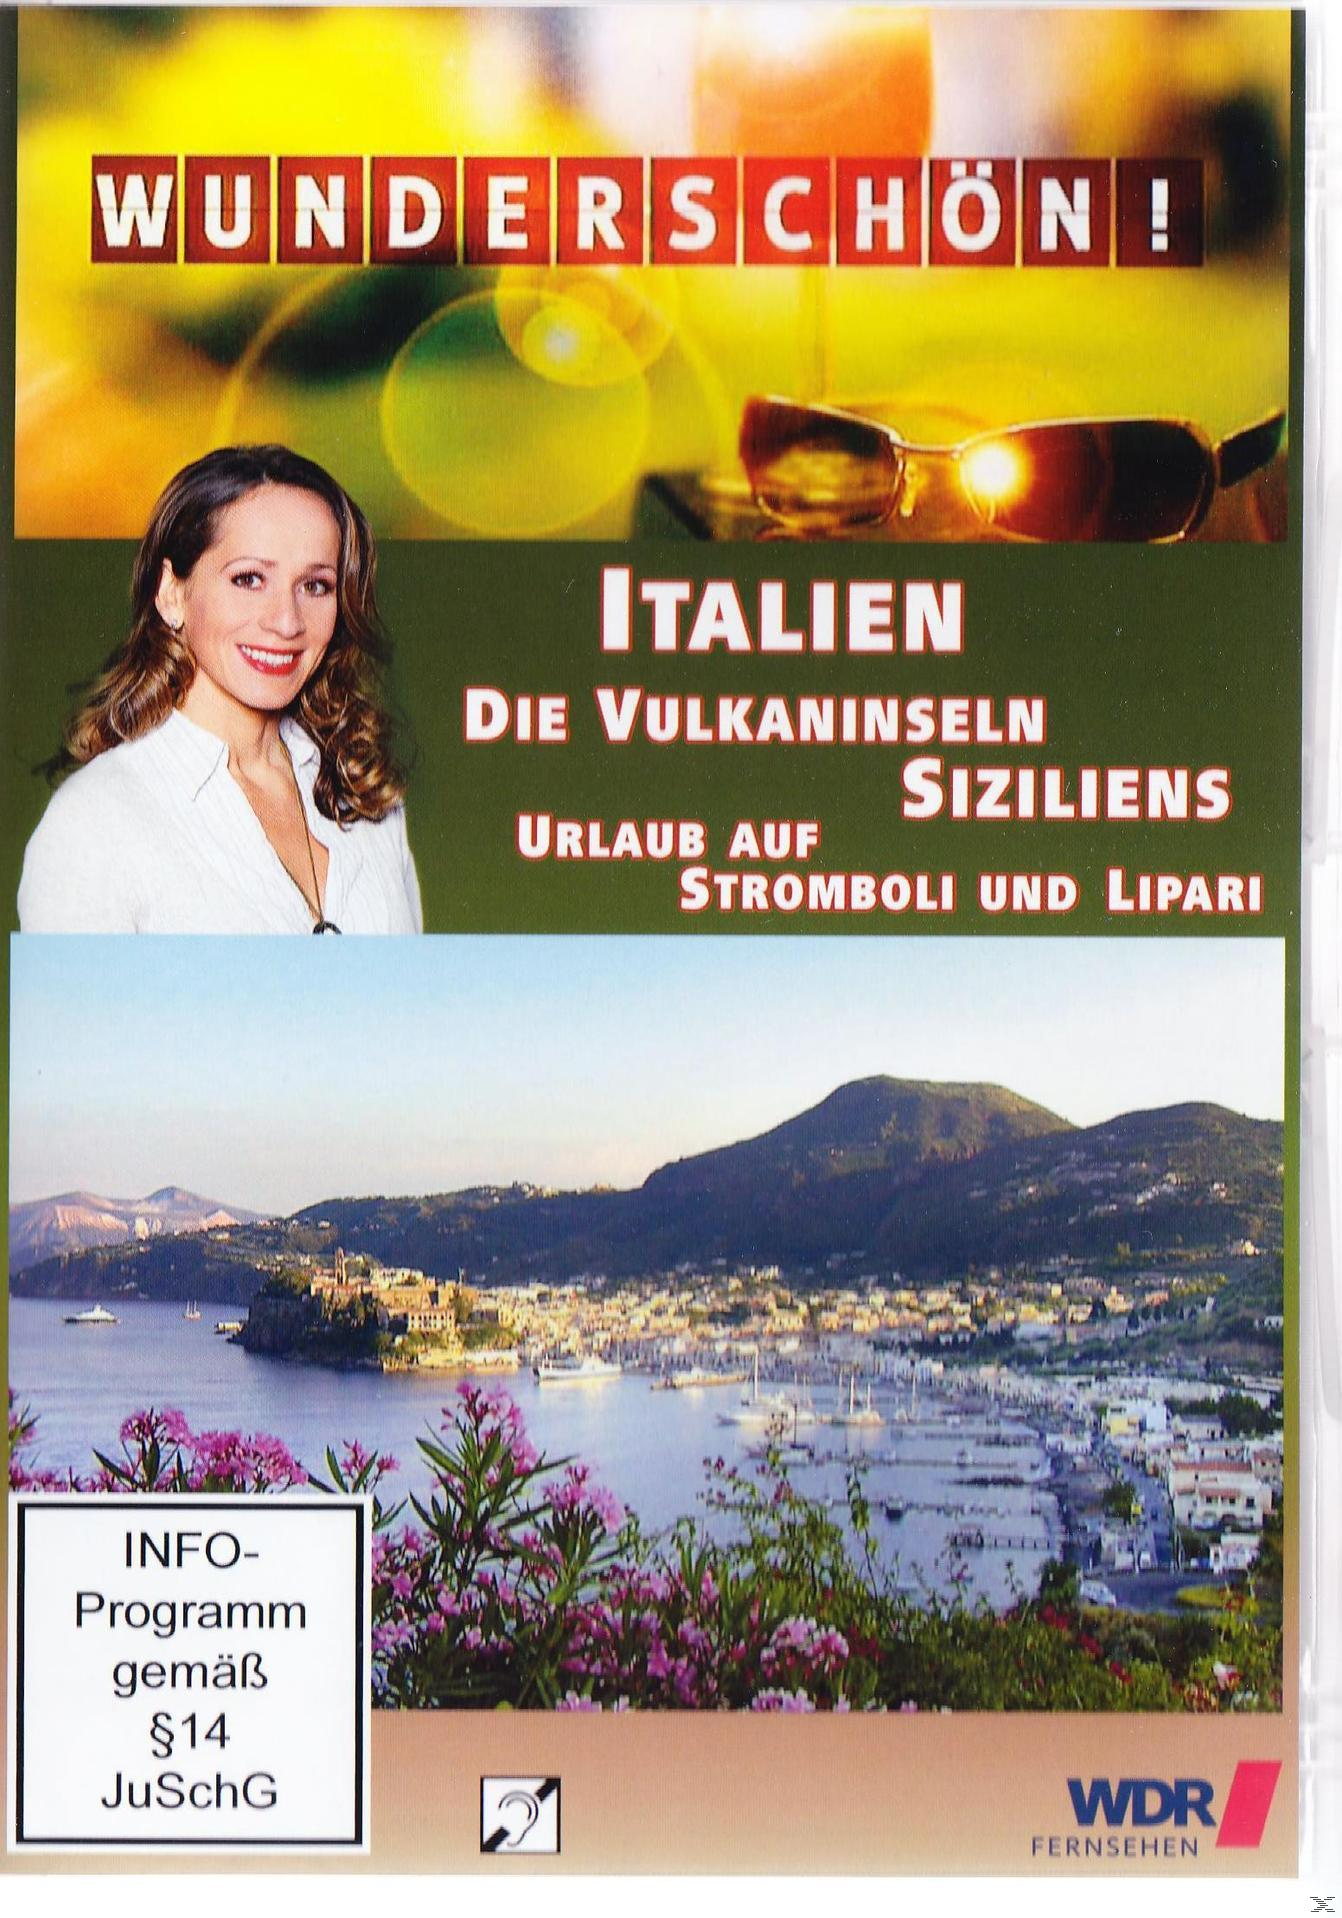 Wunderschön! - Italien: Die Vulkaninseln - und Siziliens DVD auf Urlaub Lipari Stromboli